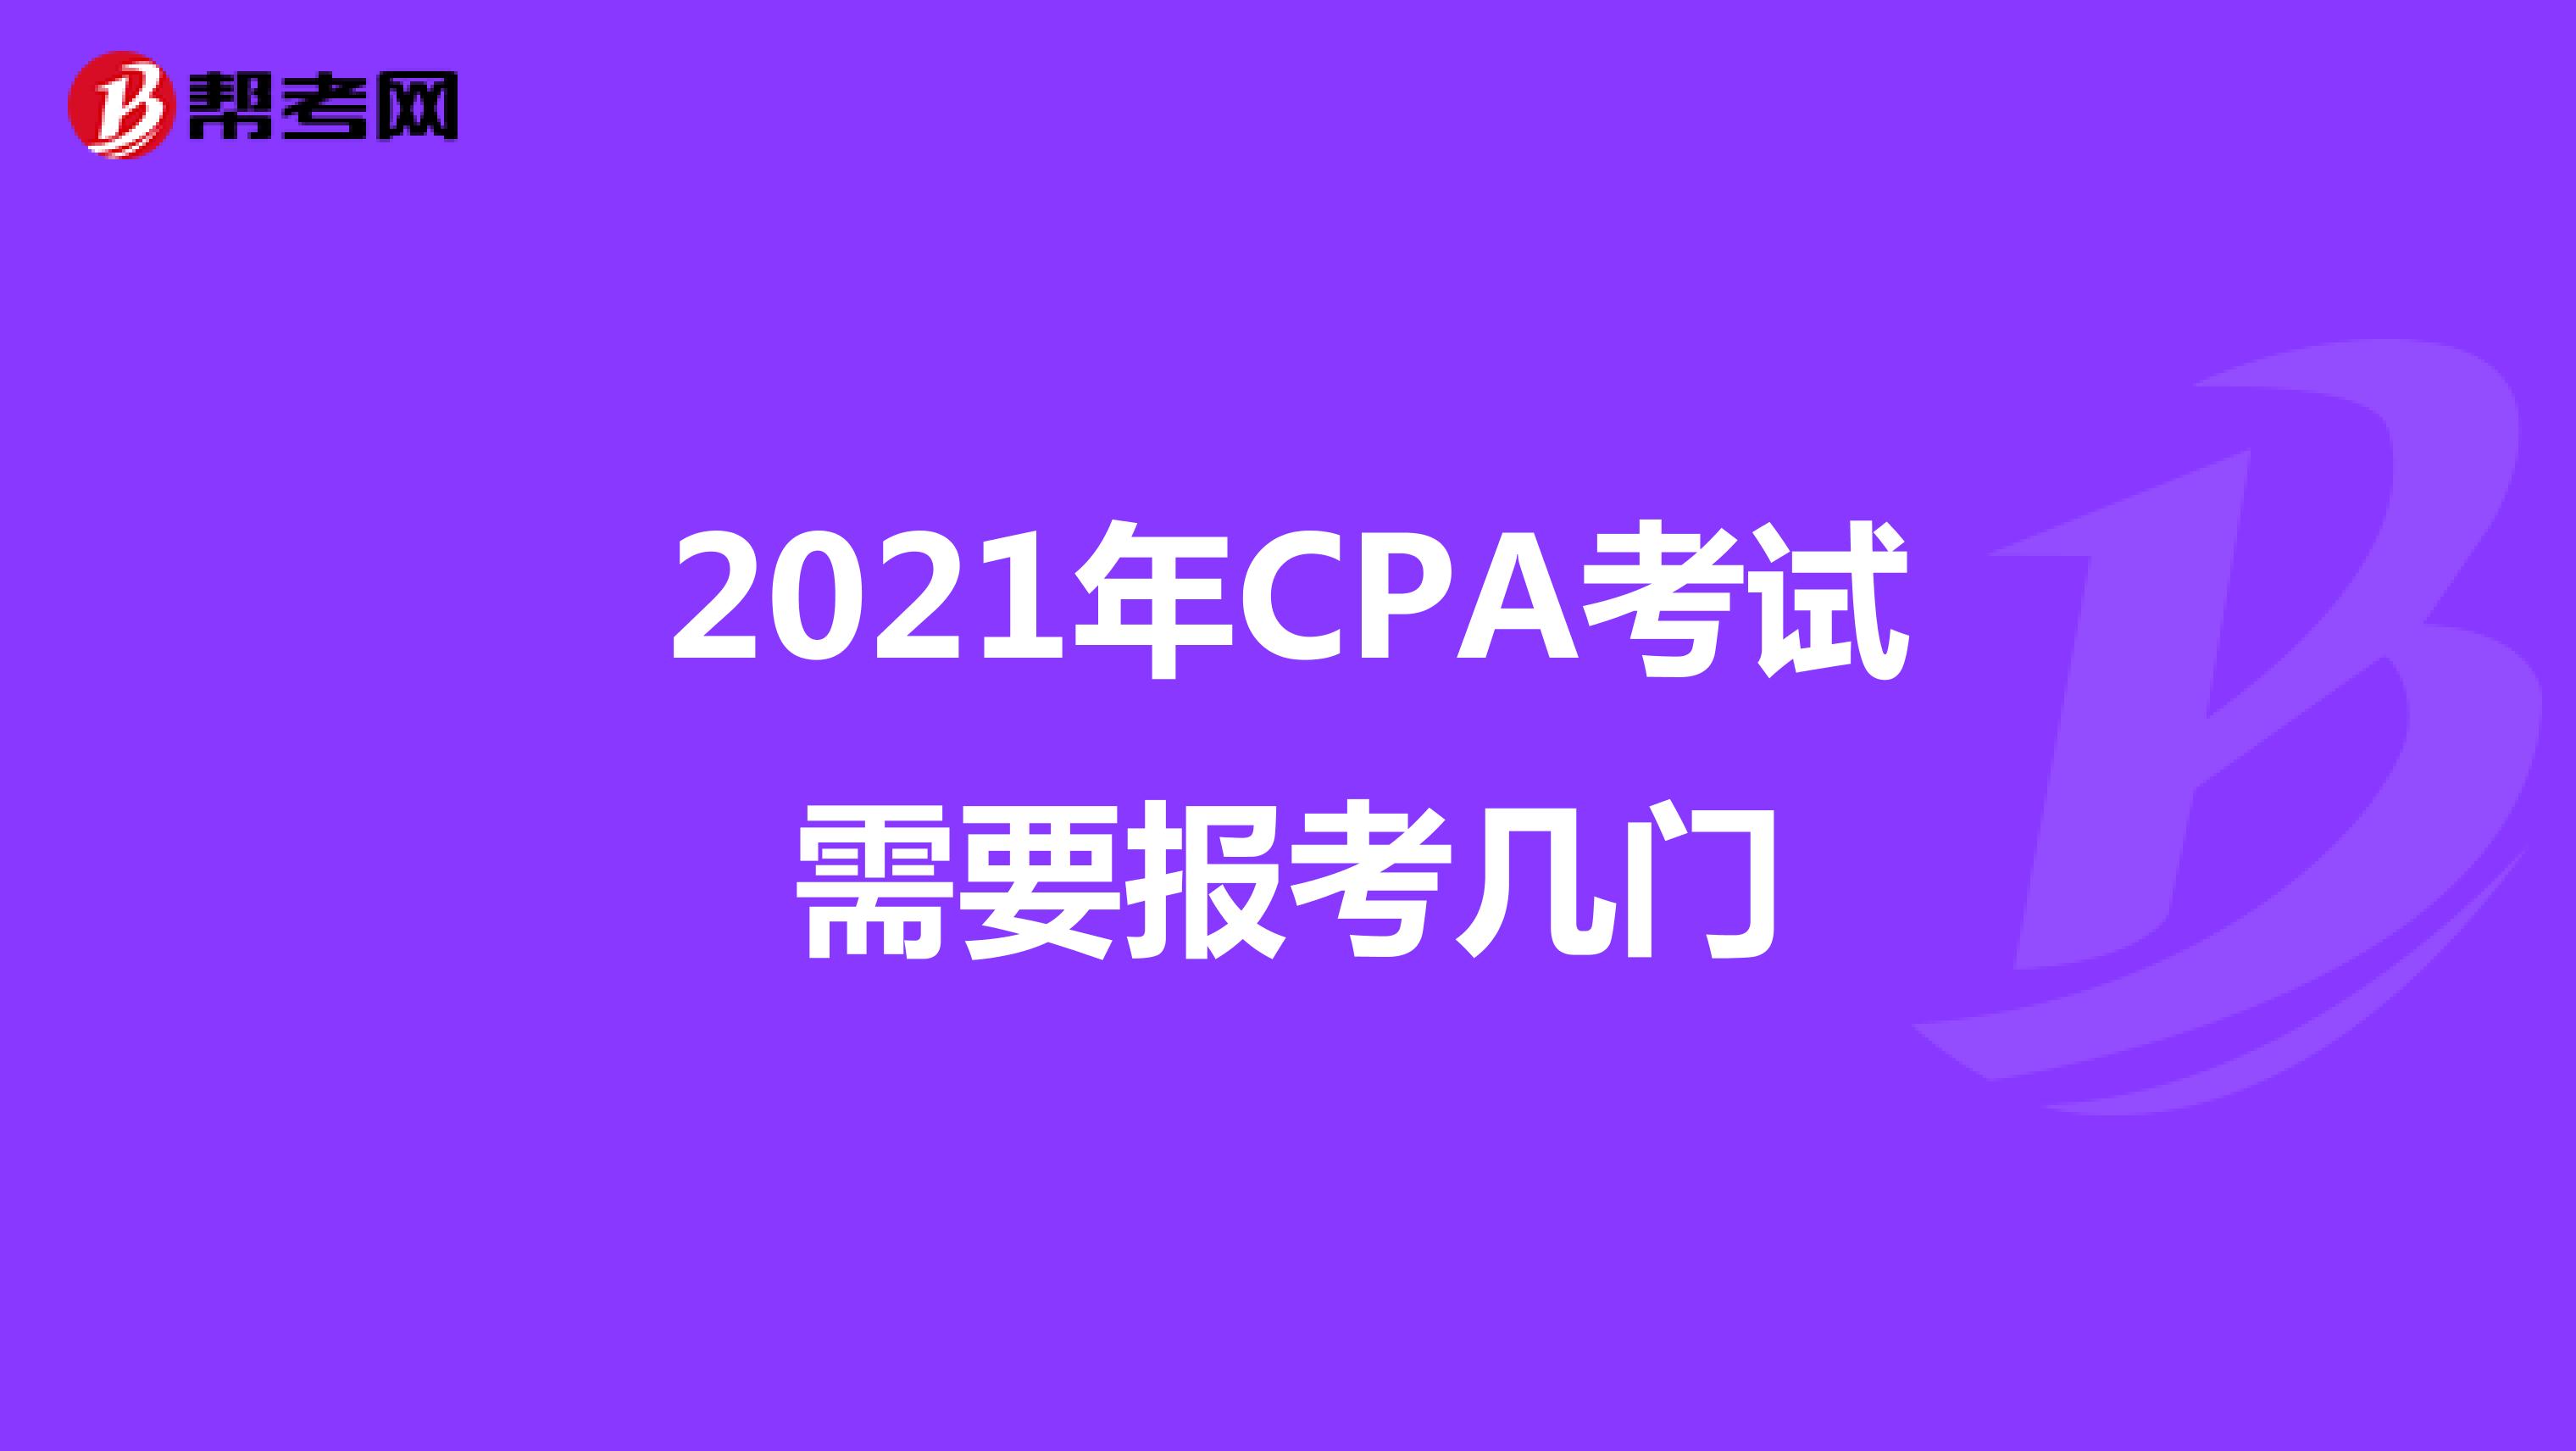 2021年CPA考试需要报考几门